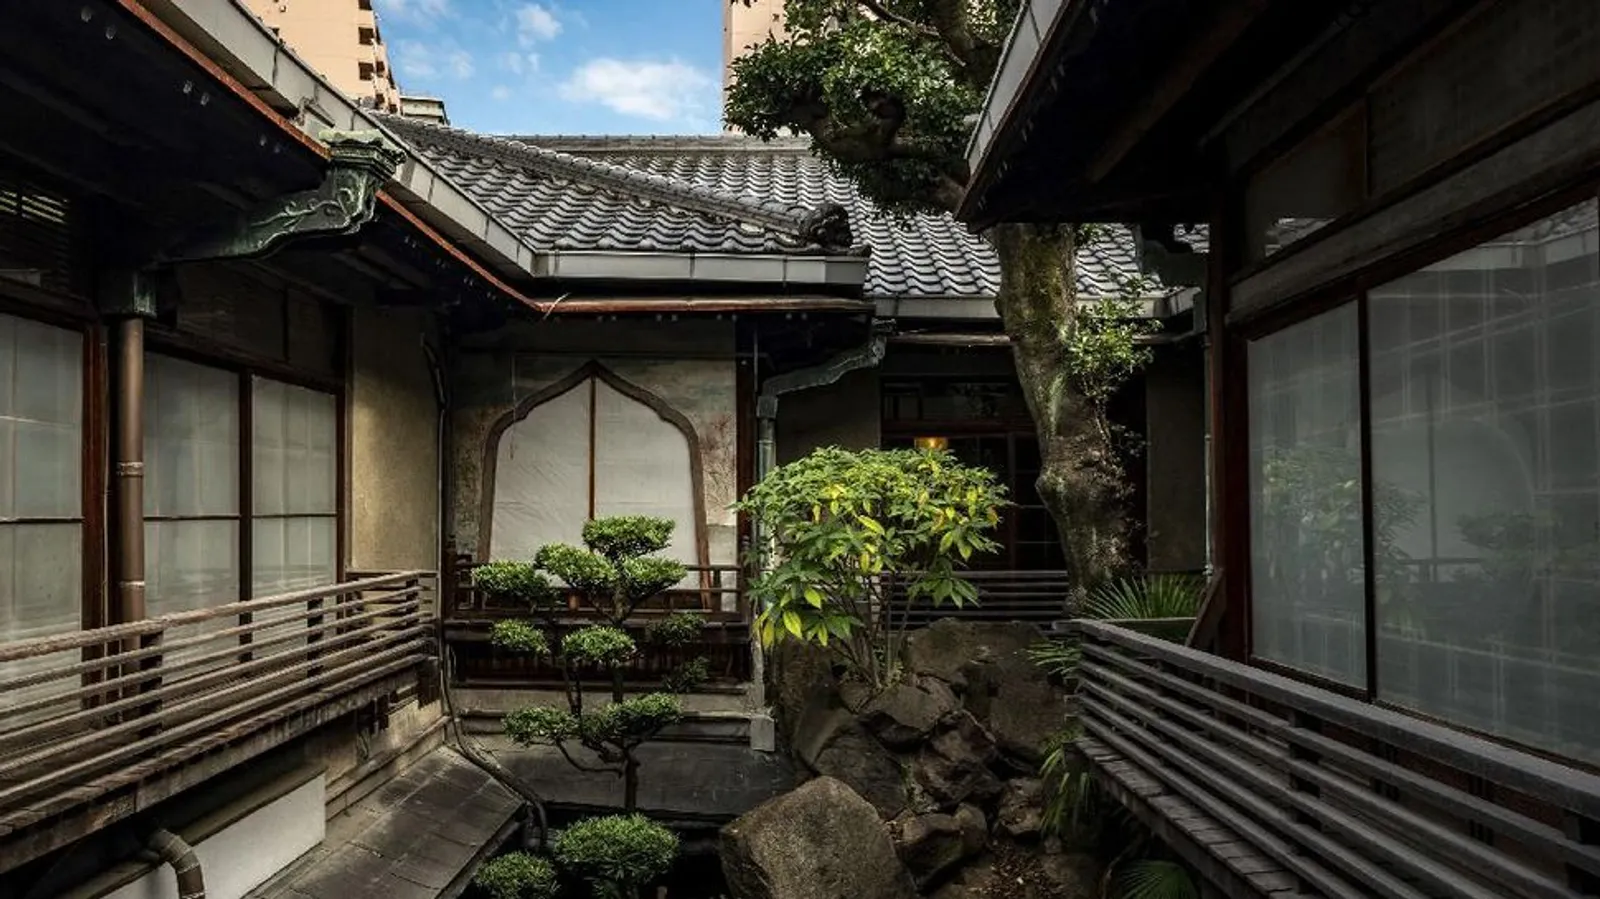 Taiyoshi Hyakubban, Rumah Bordil Jepang Berumur Lebih Dari 100 Tahun